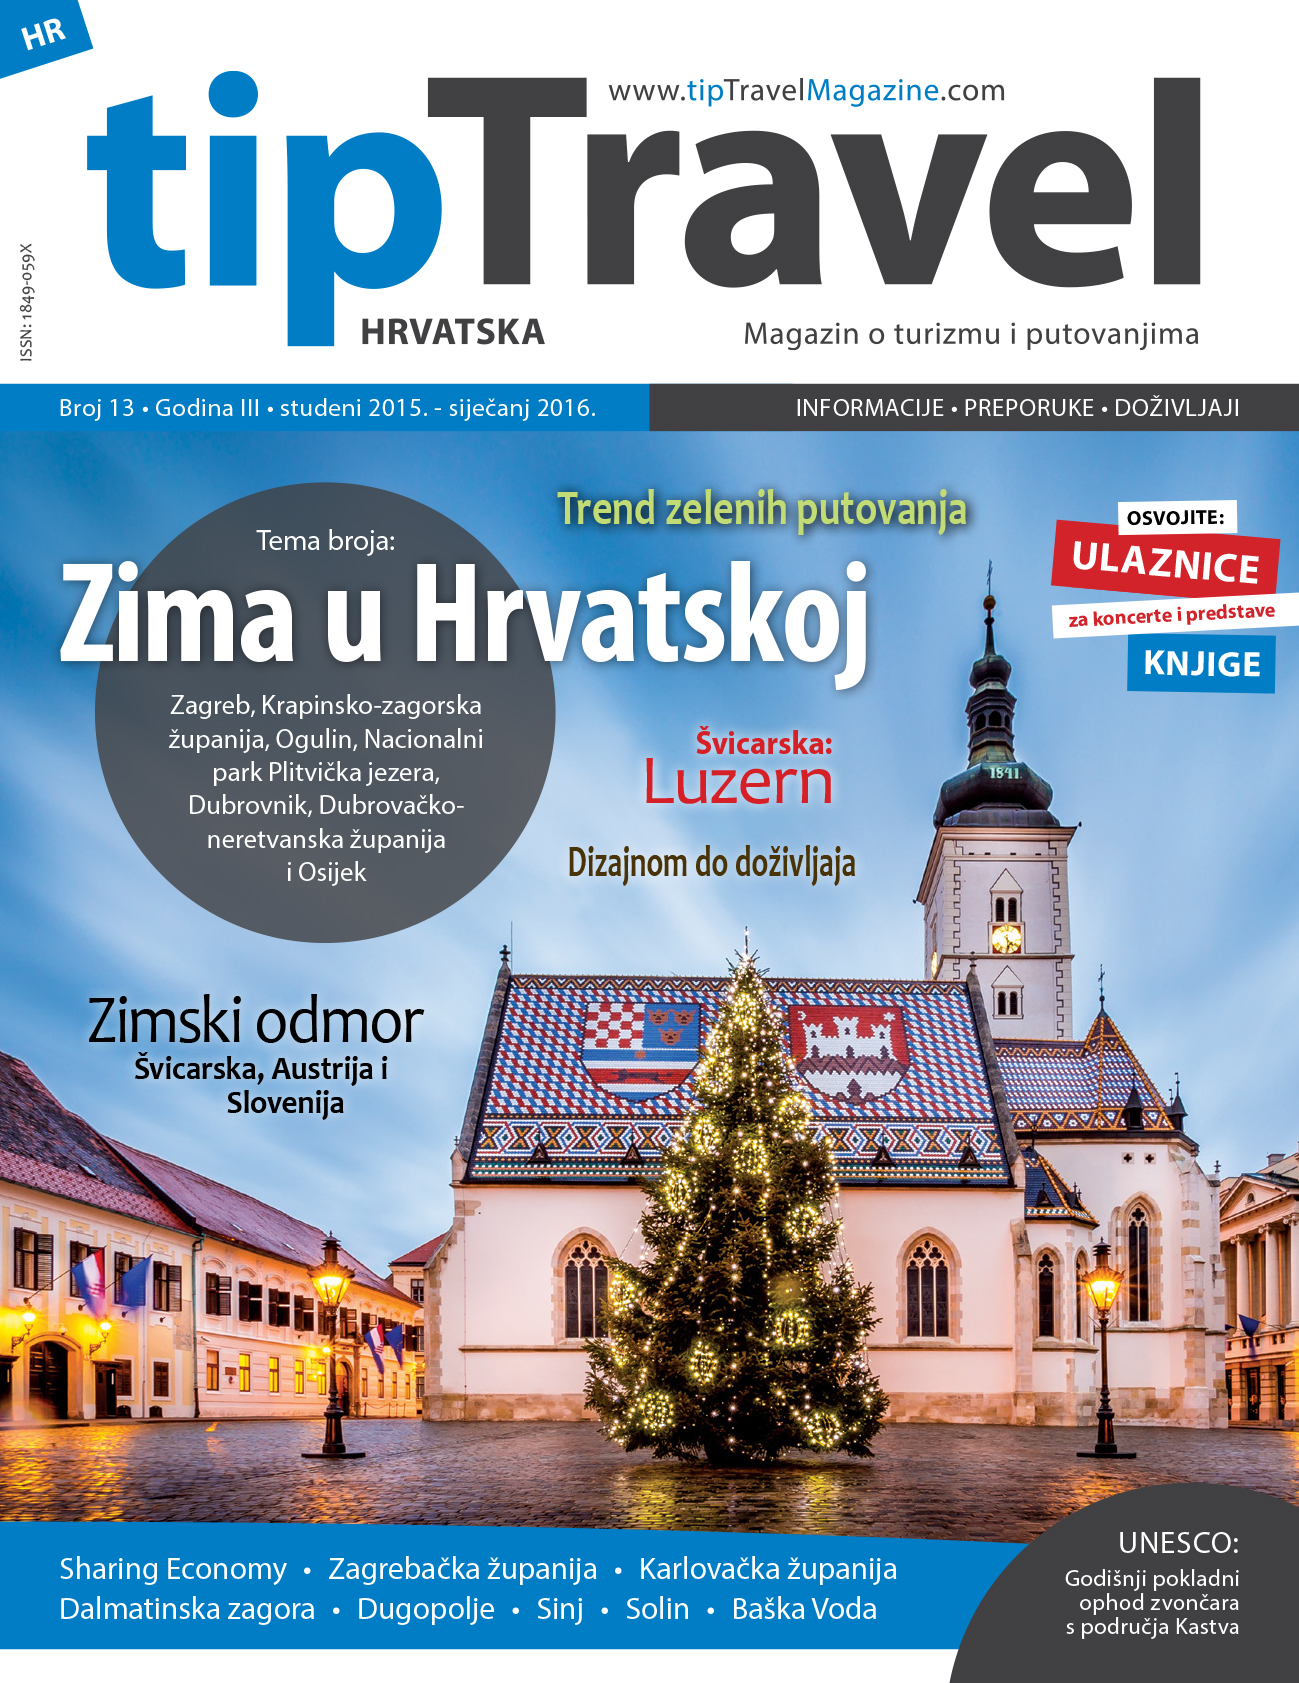 tipTravel magazine cover 013 HR